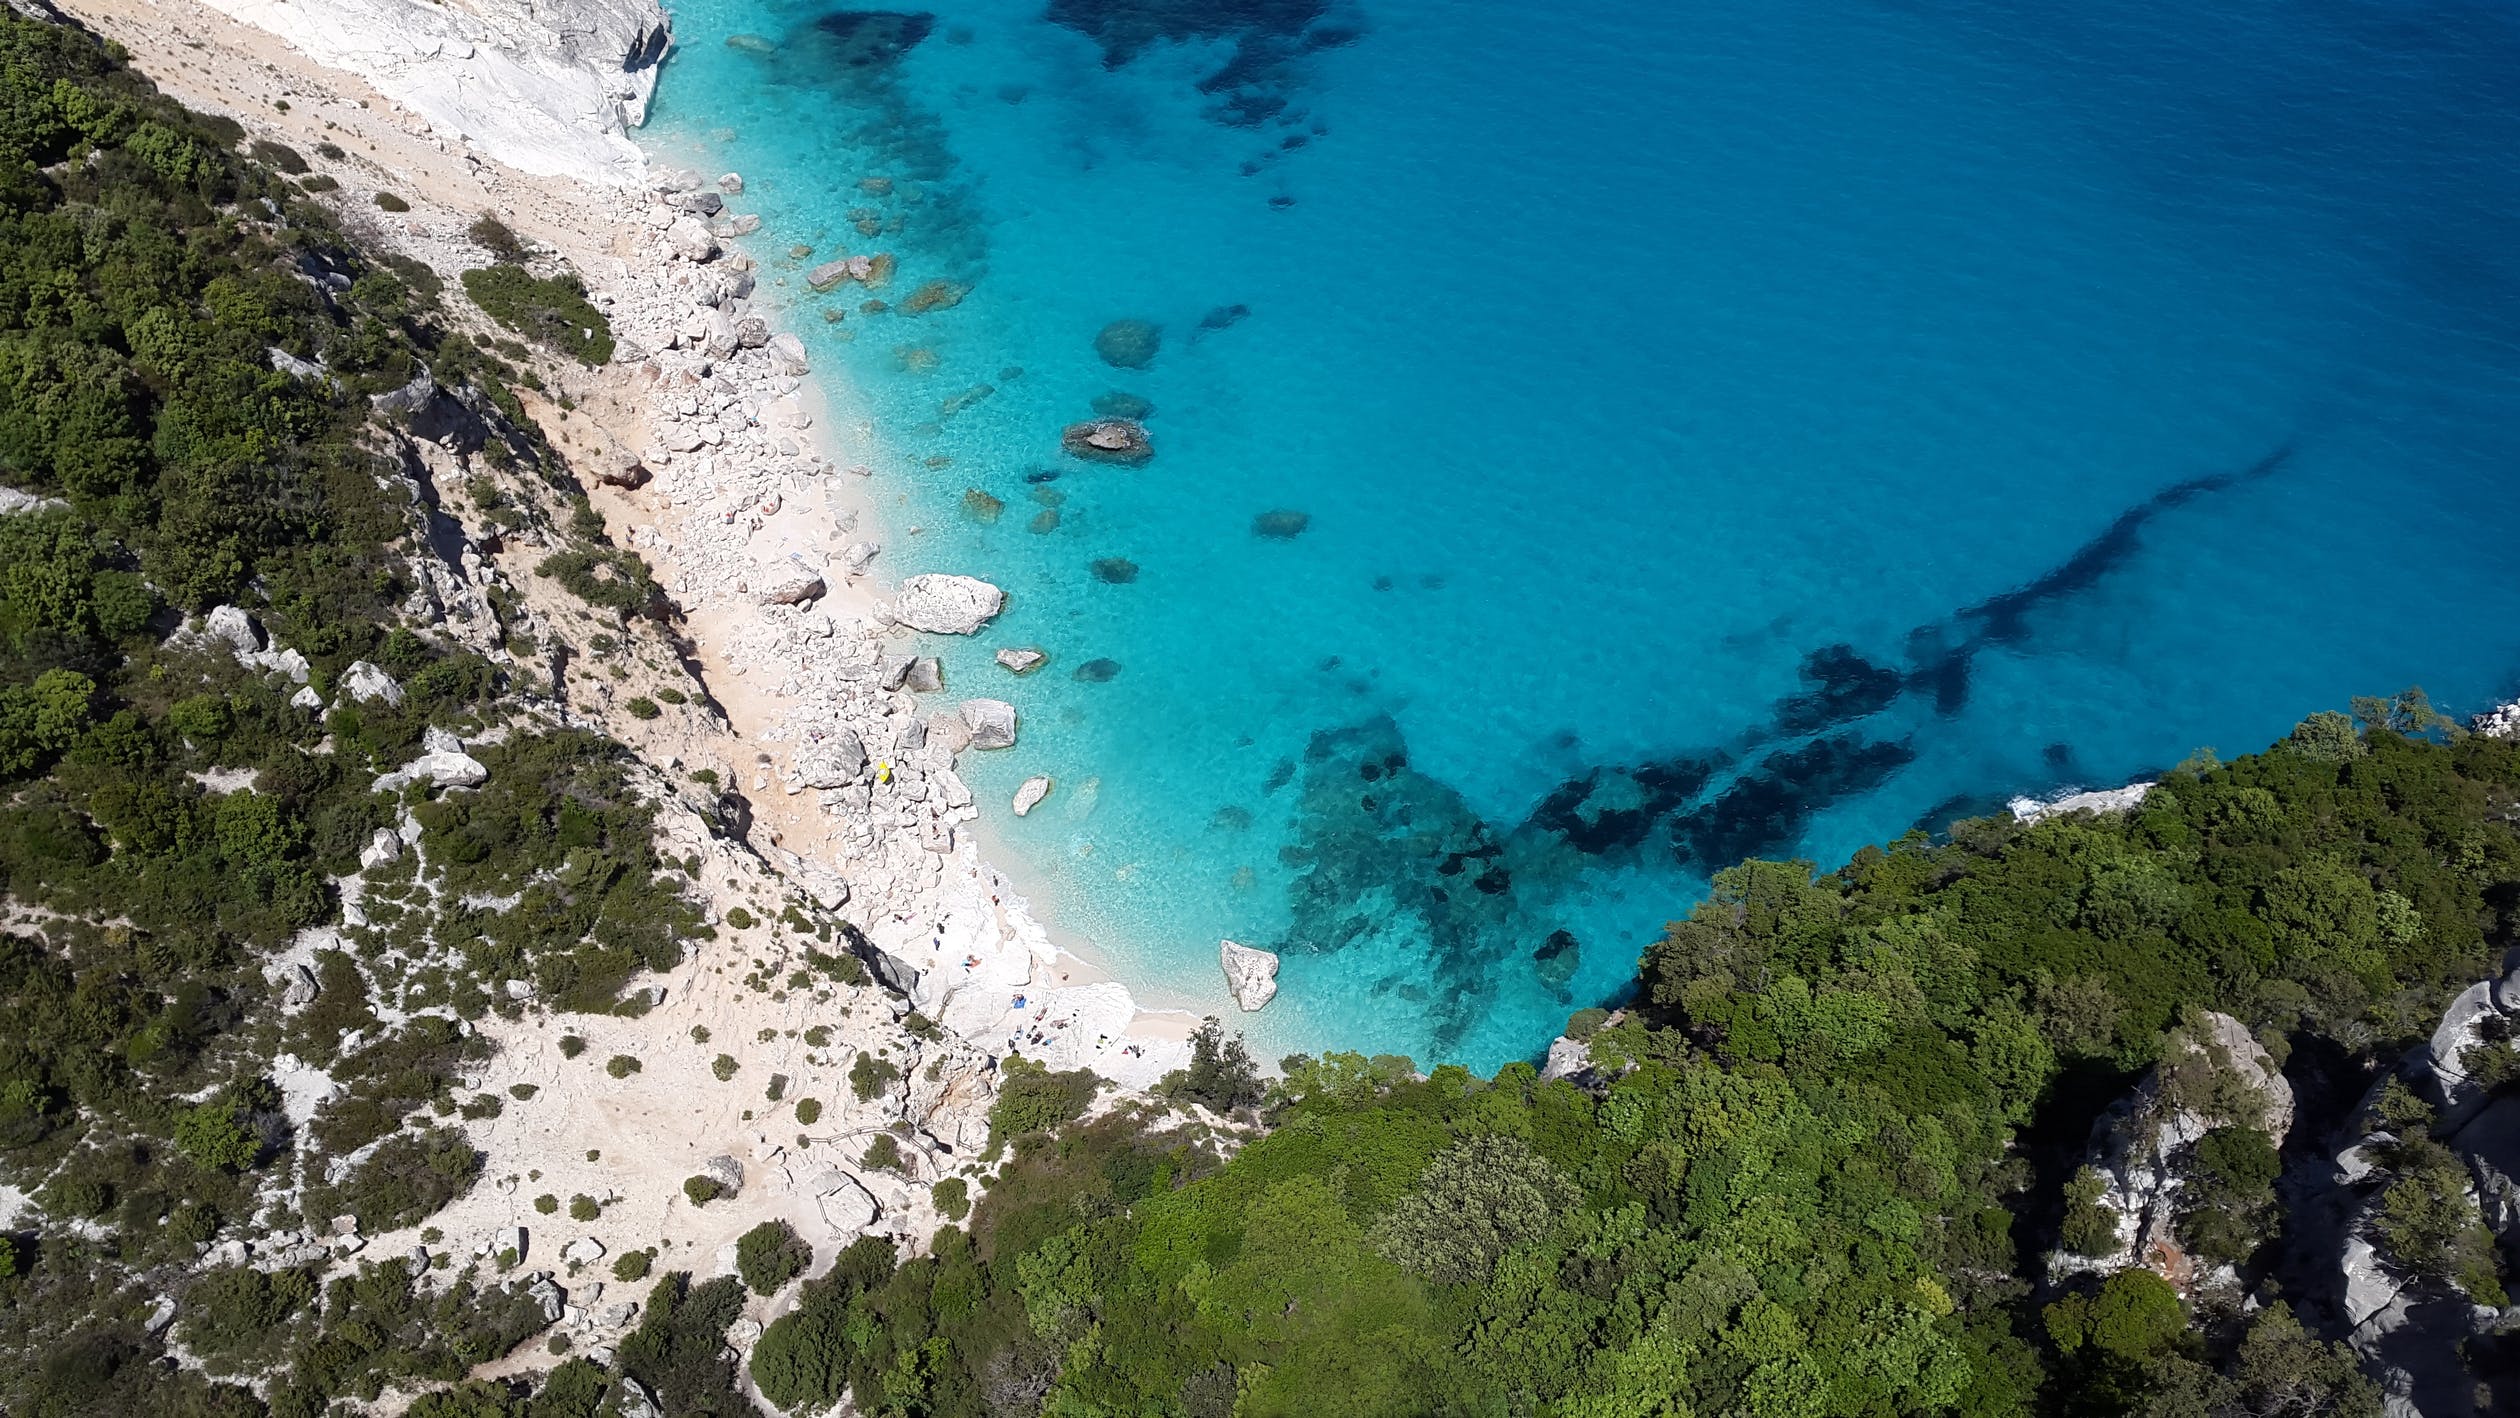 Sardinien: Insel der Magie im Mittelmeer